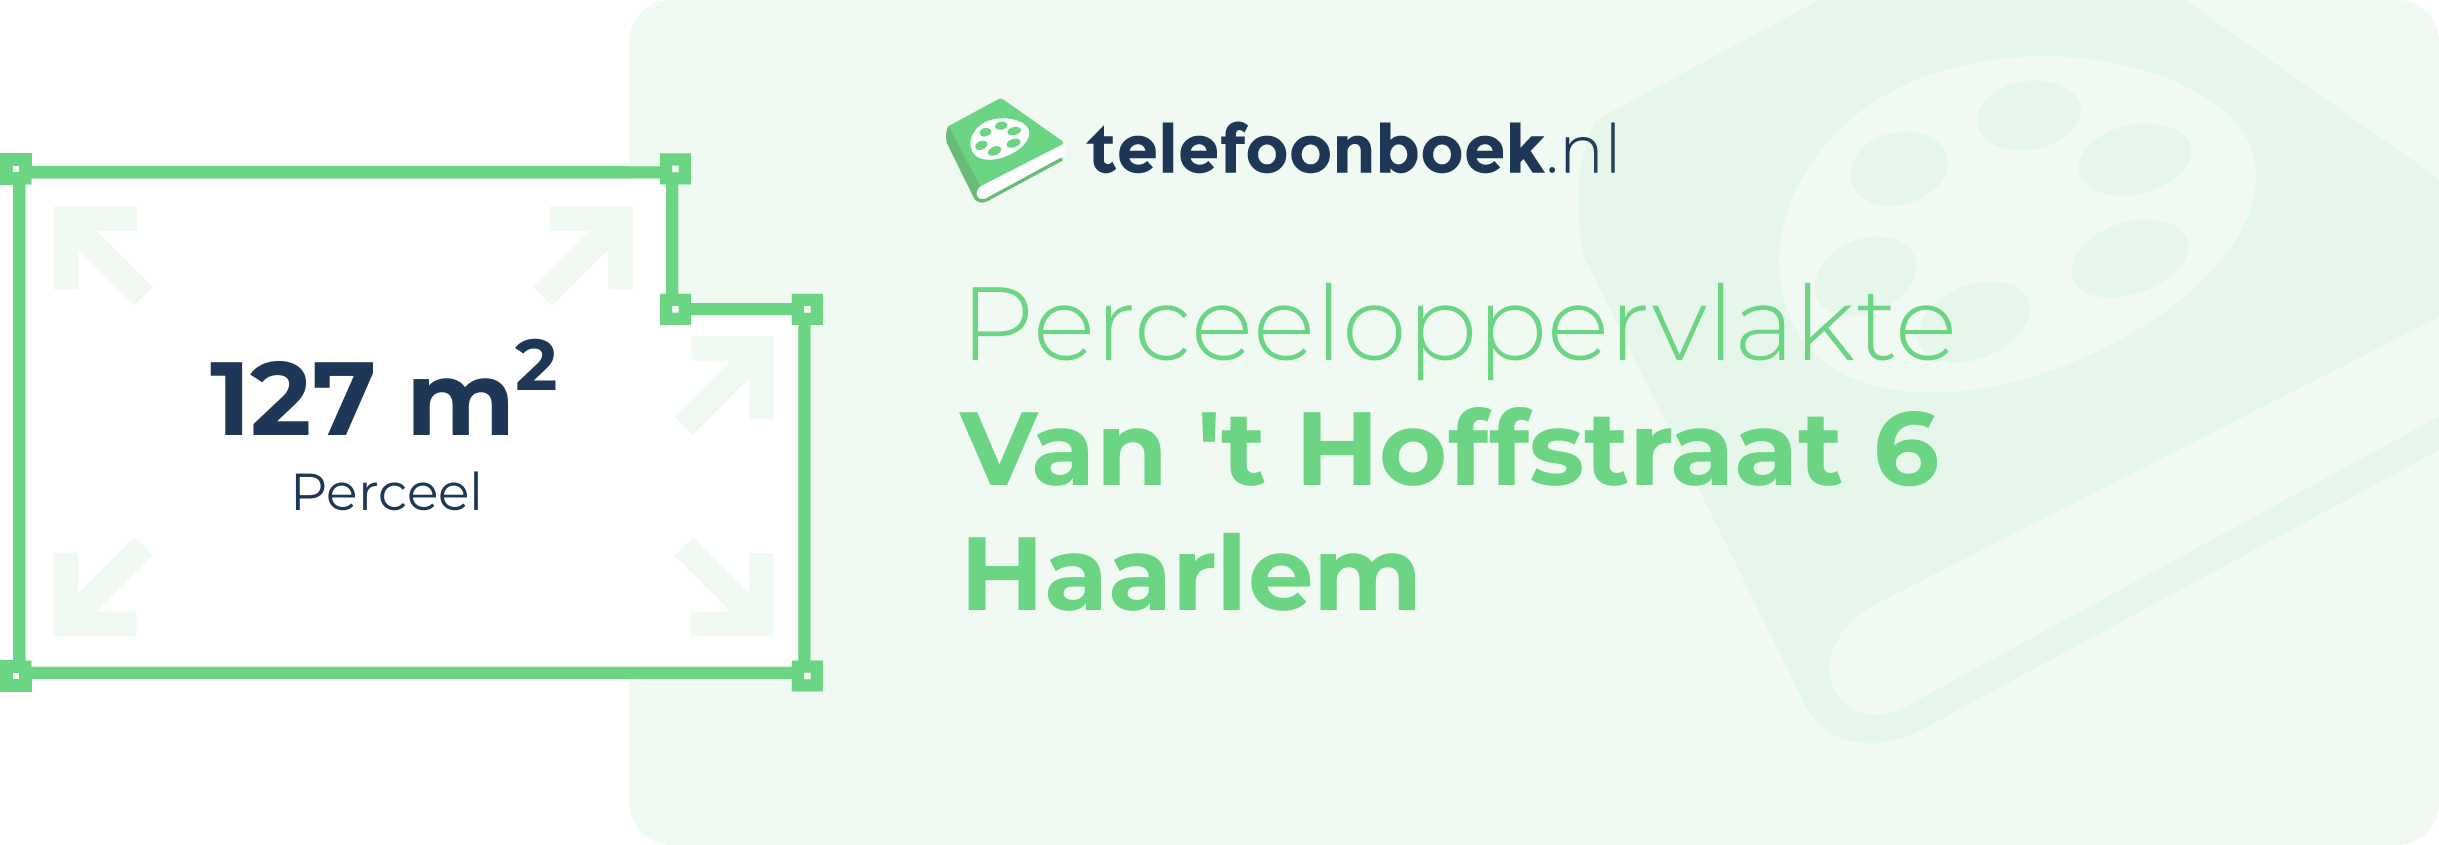 Perceeloppervlakte Van 't Hoffstraat 6 Haarlem